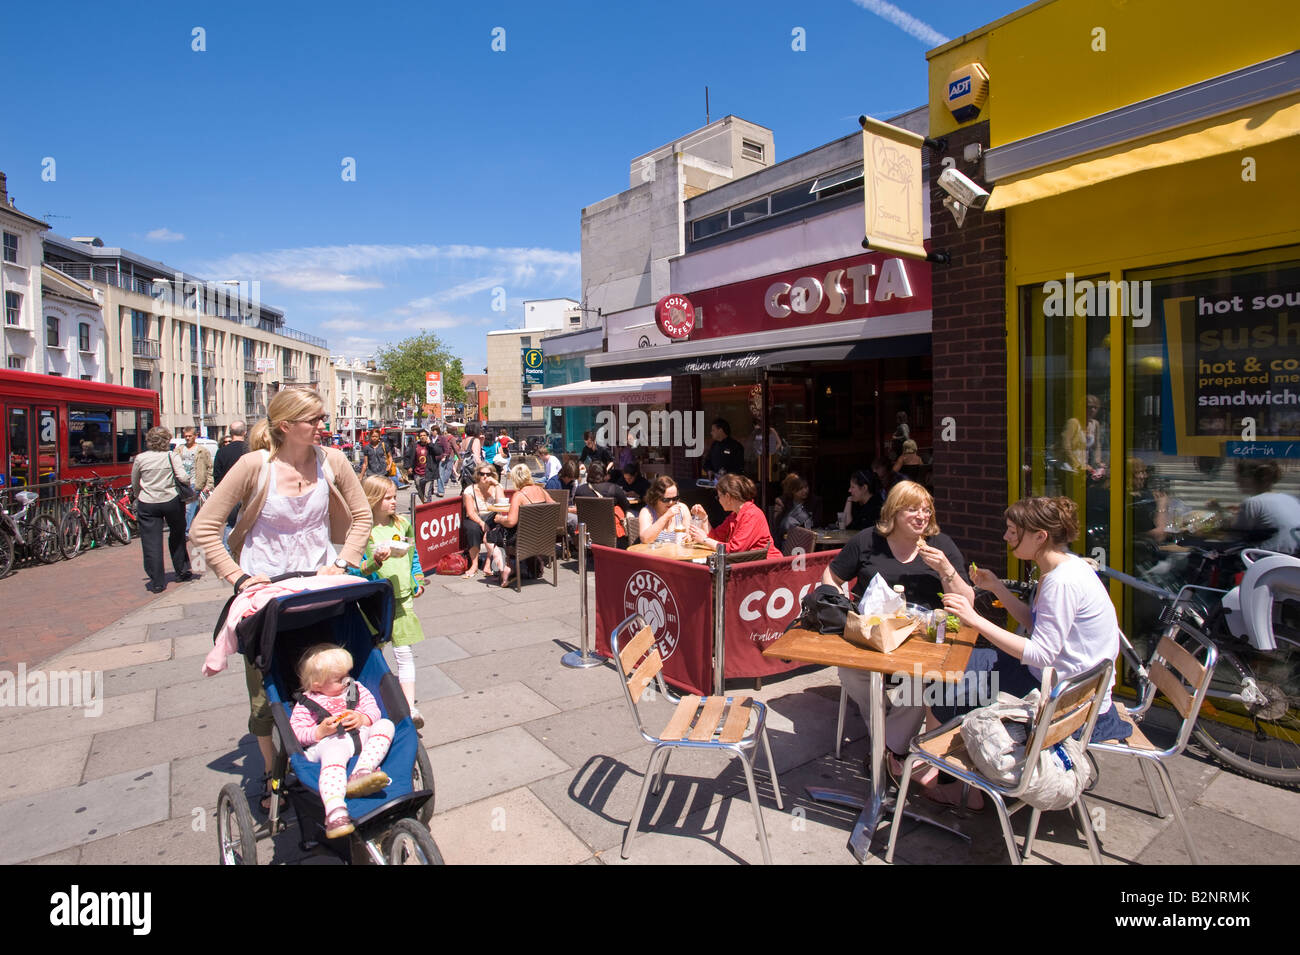 Persone in Sidewalk Cafe potrete gustare un drink Richmond TW10 Surrey Regno Unito Foto Stock